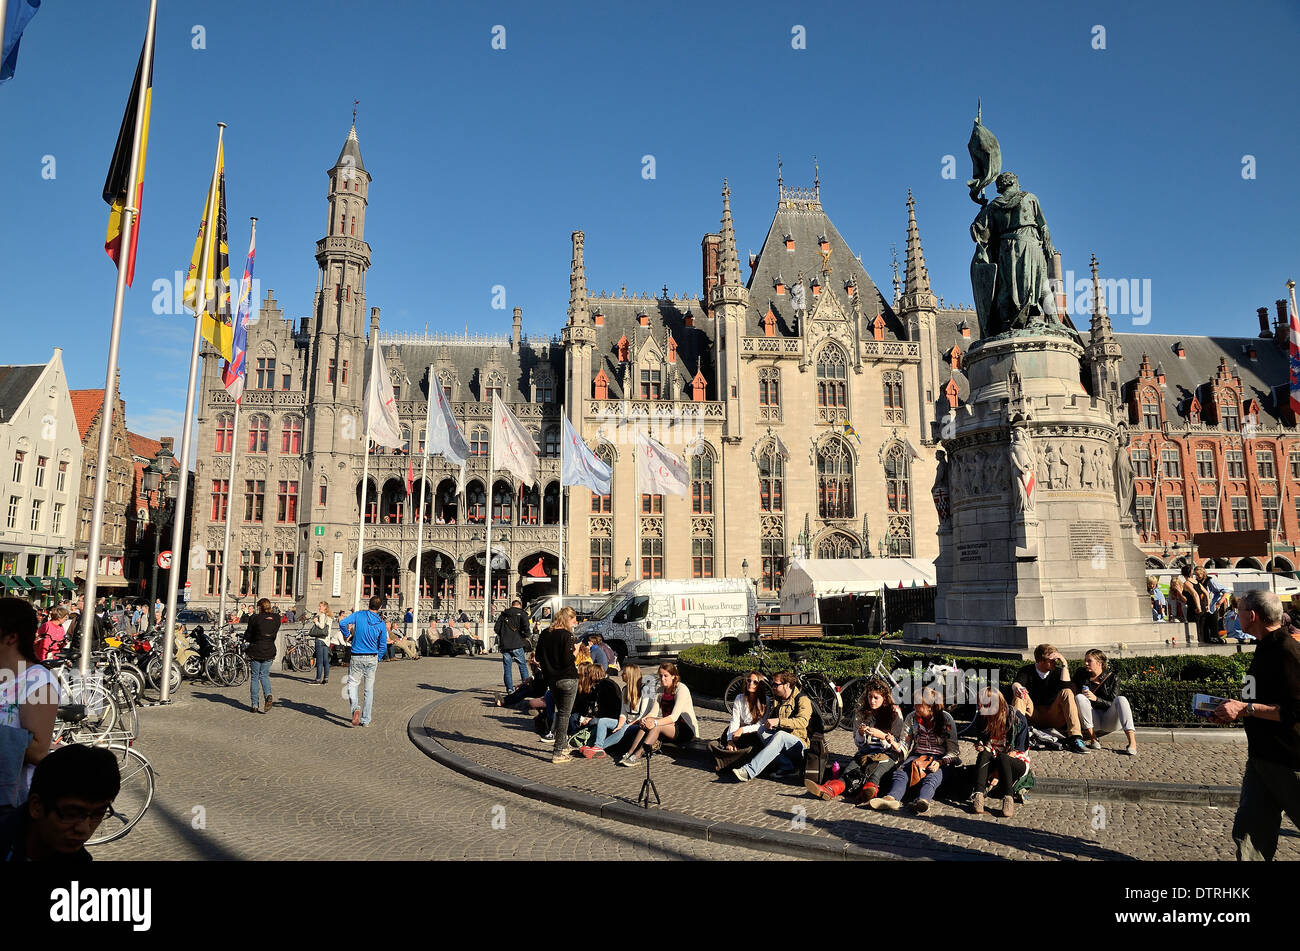 Market Square Bruges Belgium Stock Photo